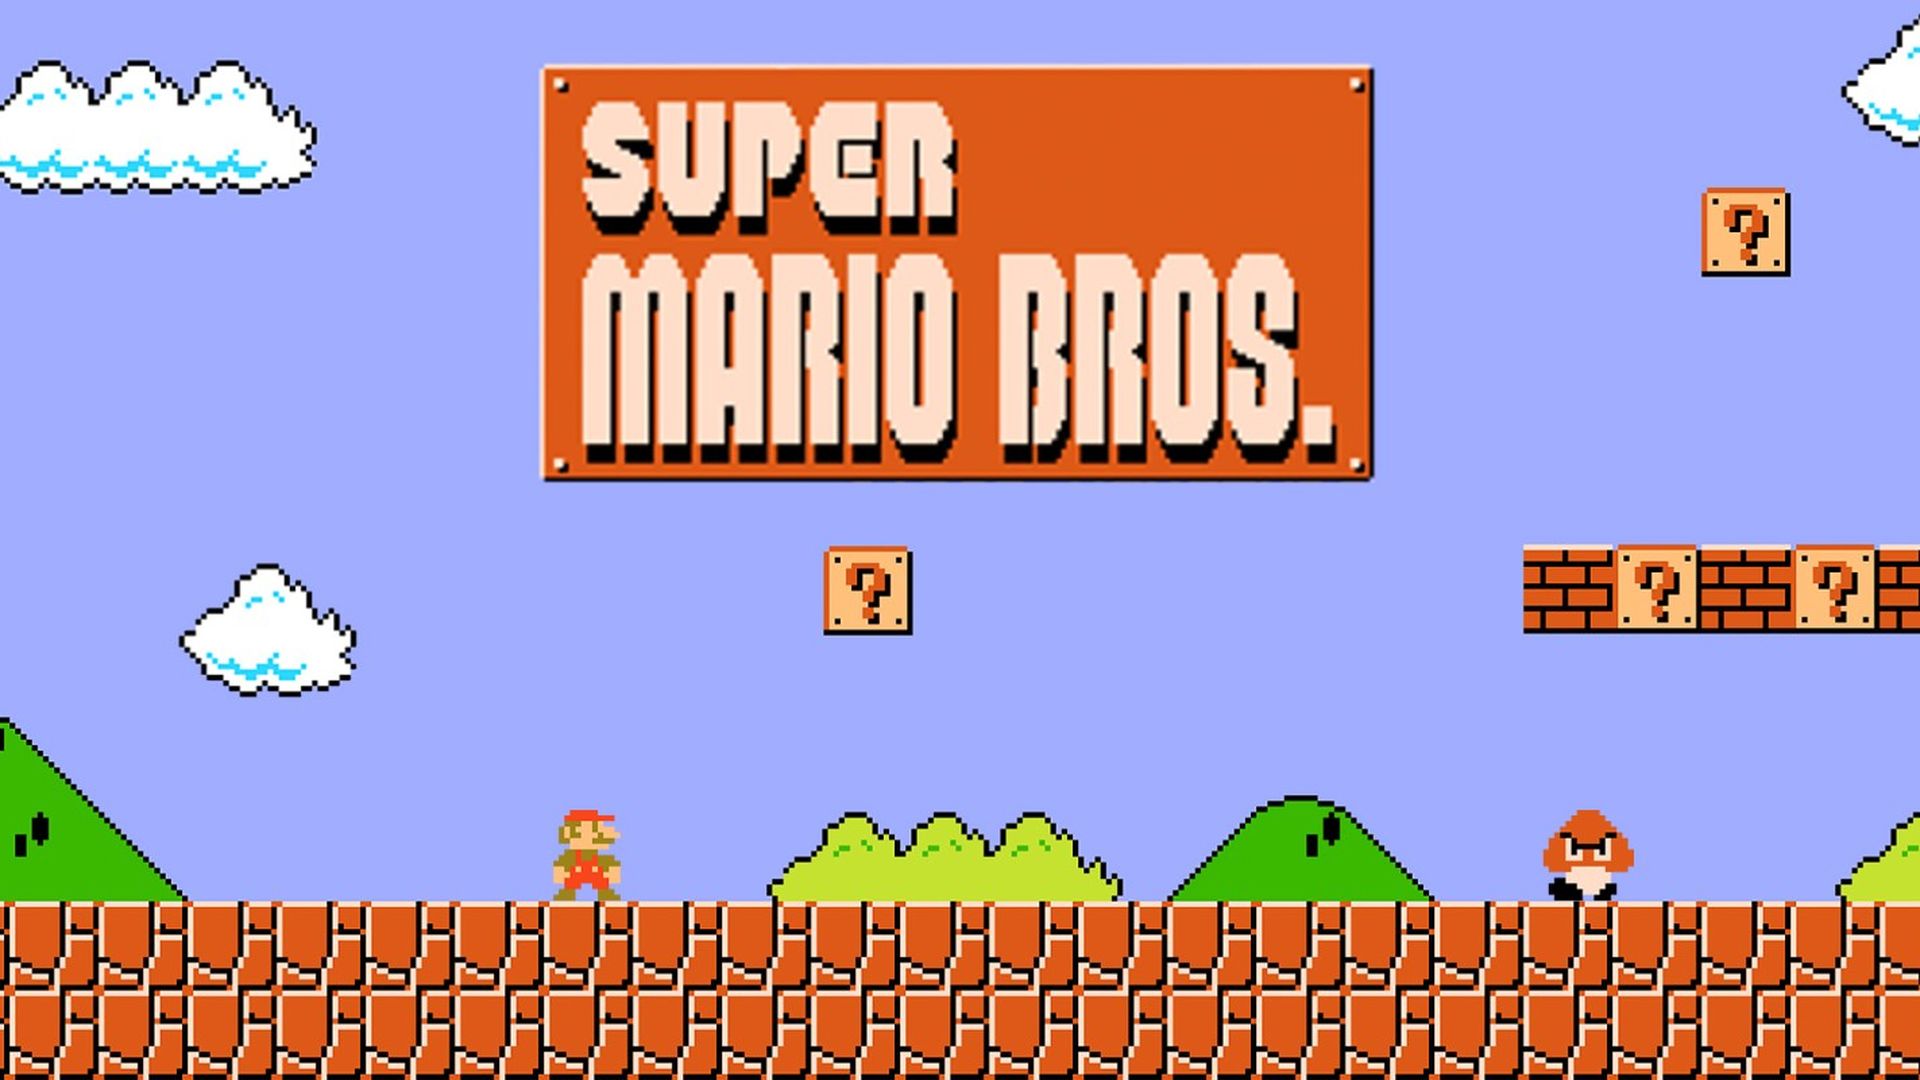 Super Mario Bros. Oyunu Satıldı! Rekor Fiyat